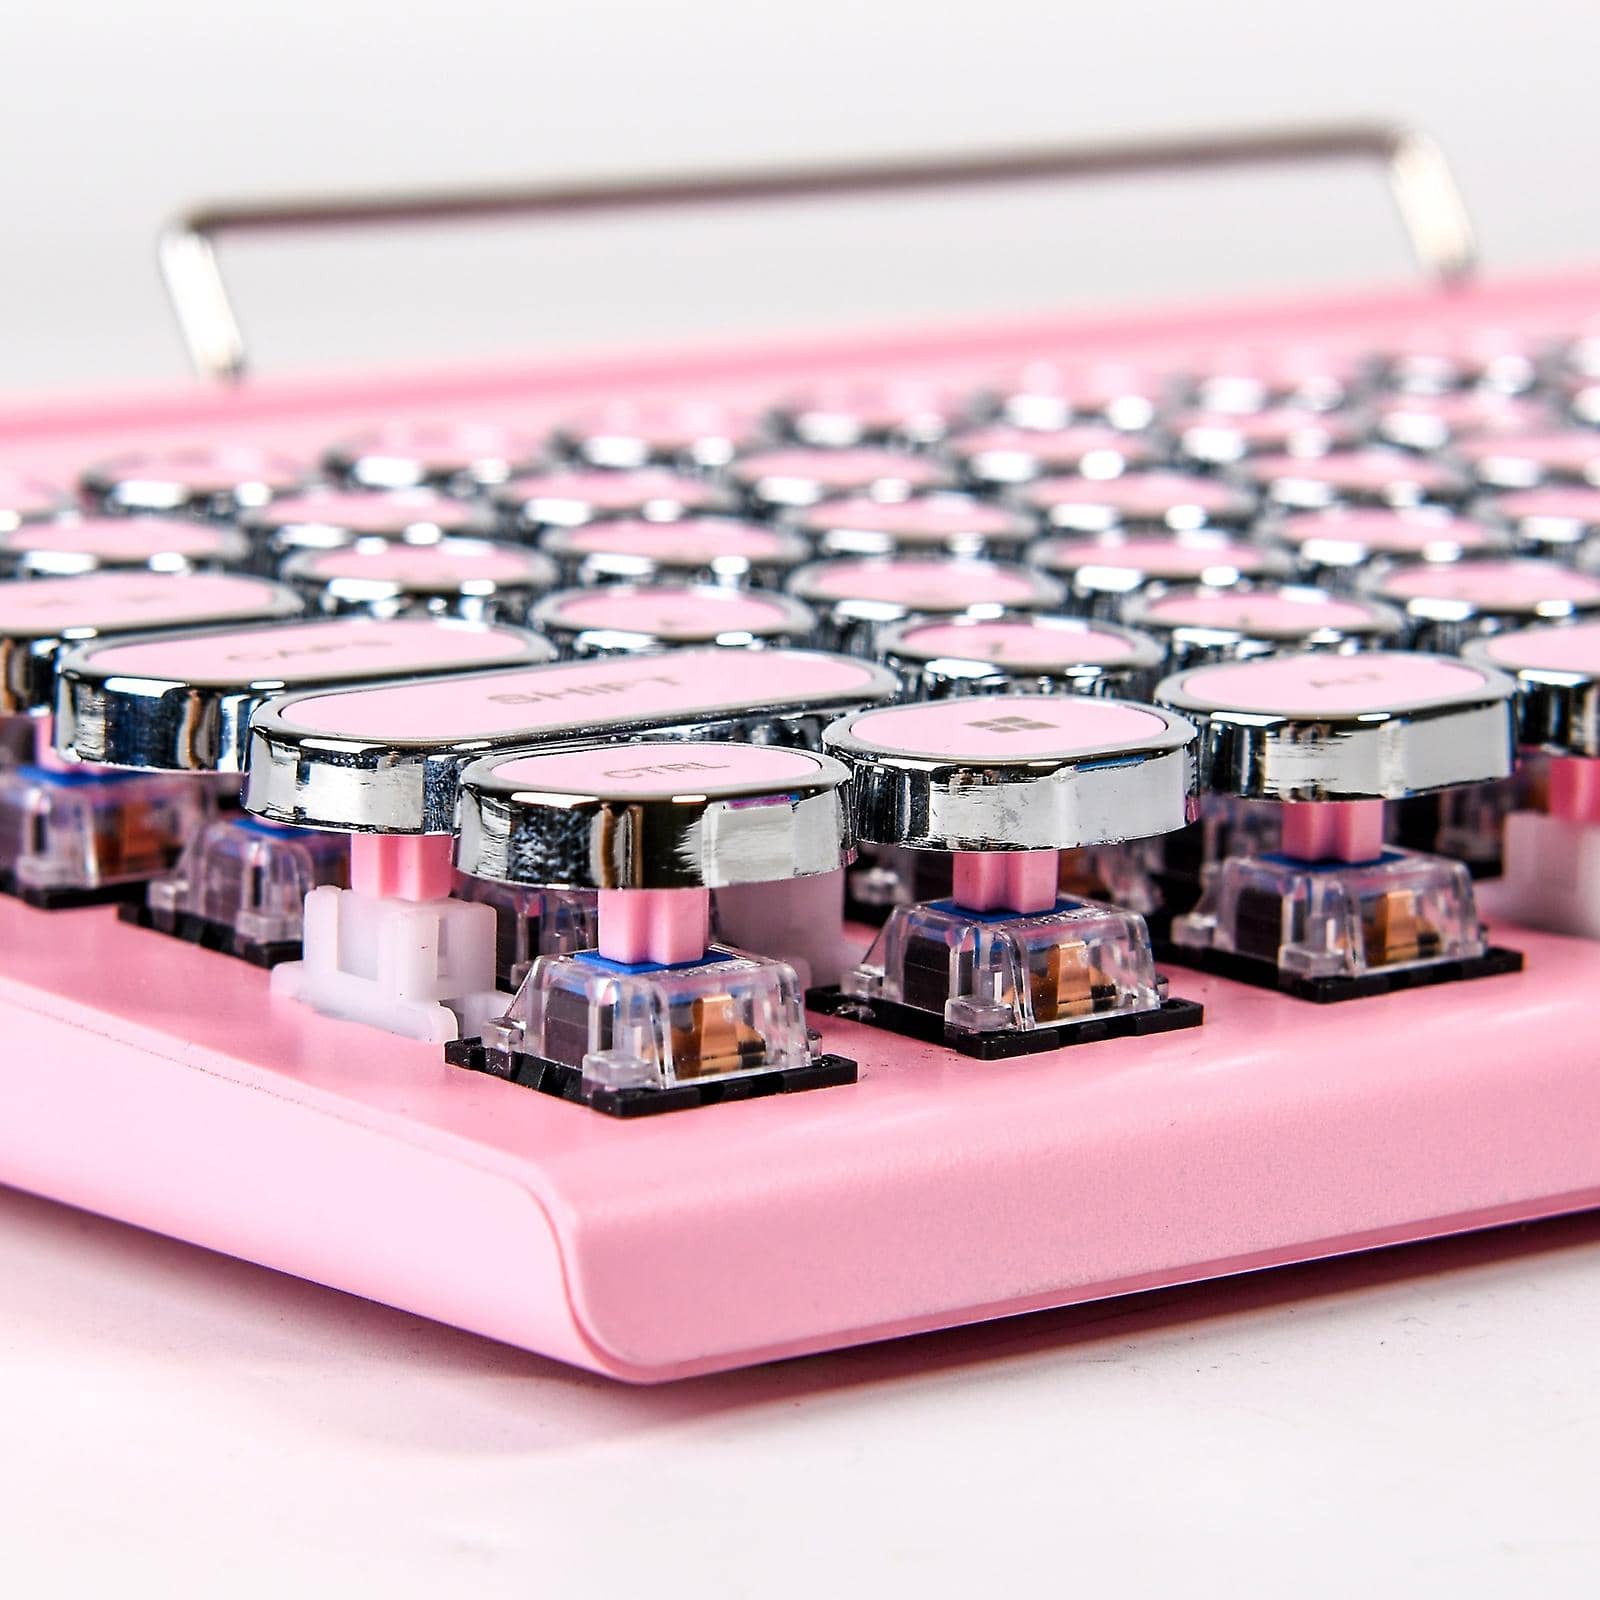 pink-retro-typewriter-keyboard-closeup